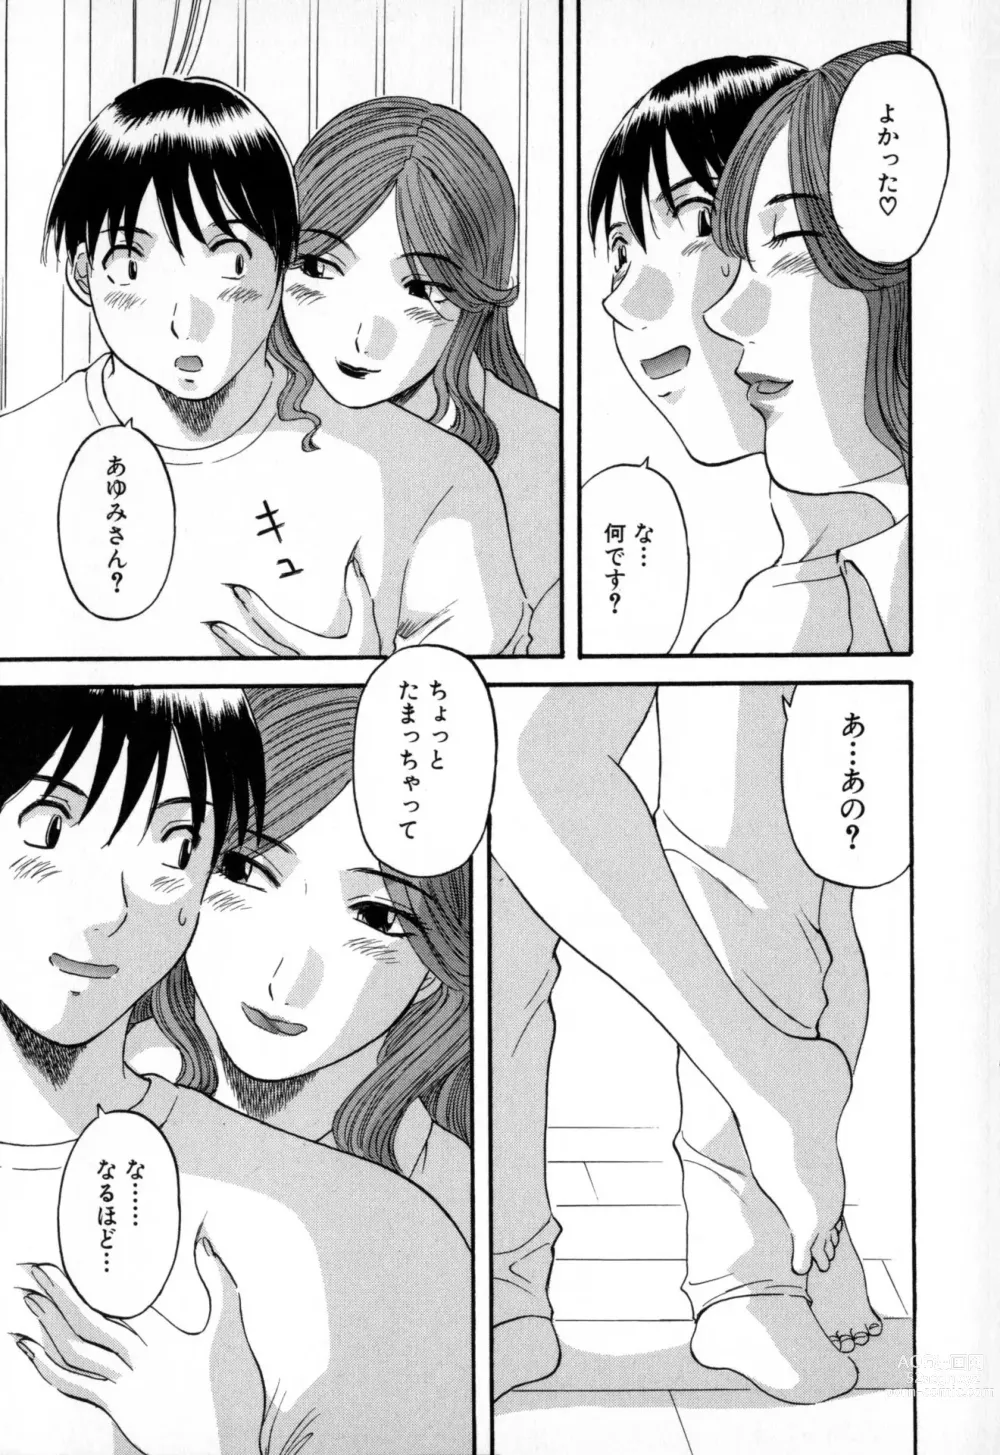 Page 171 of manga Gokuraku Ladies - Paradise Ladies